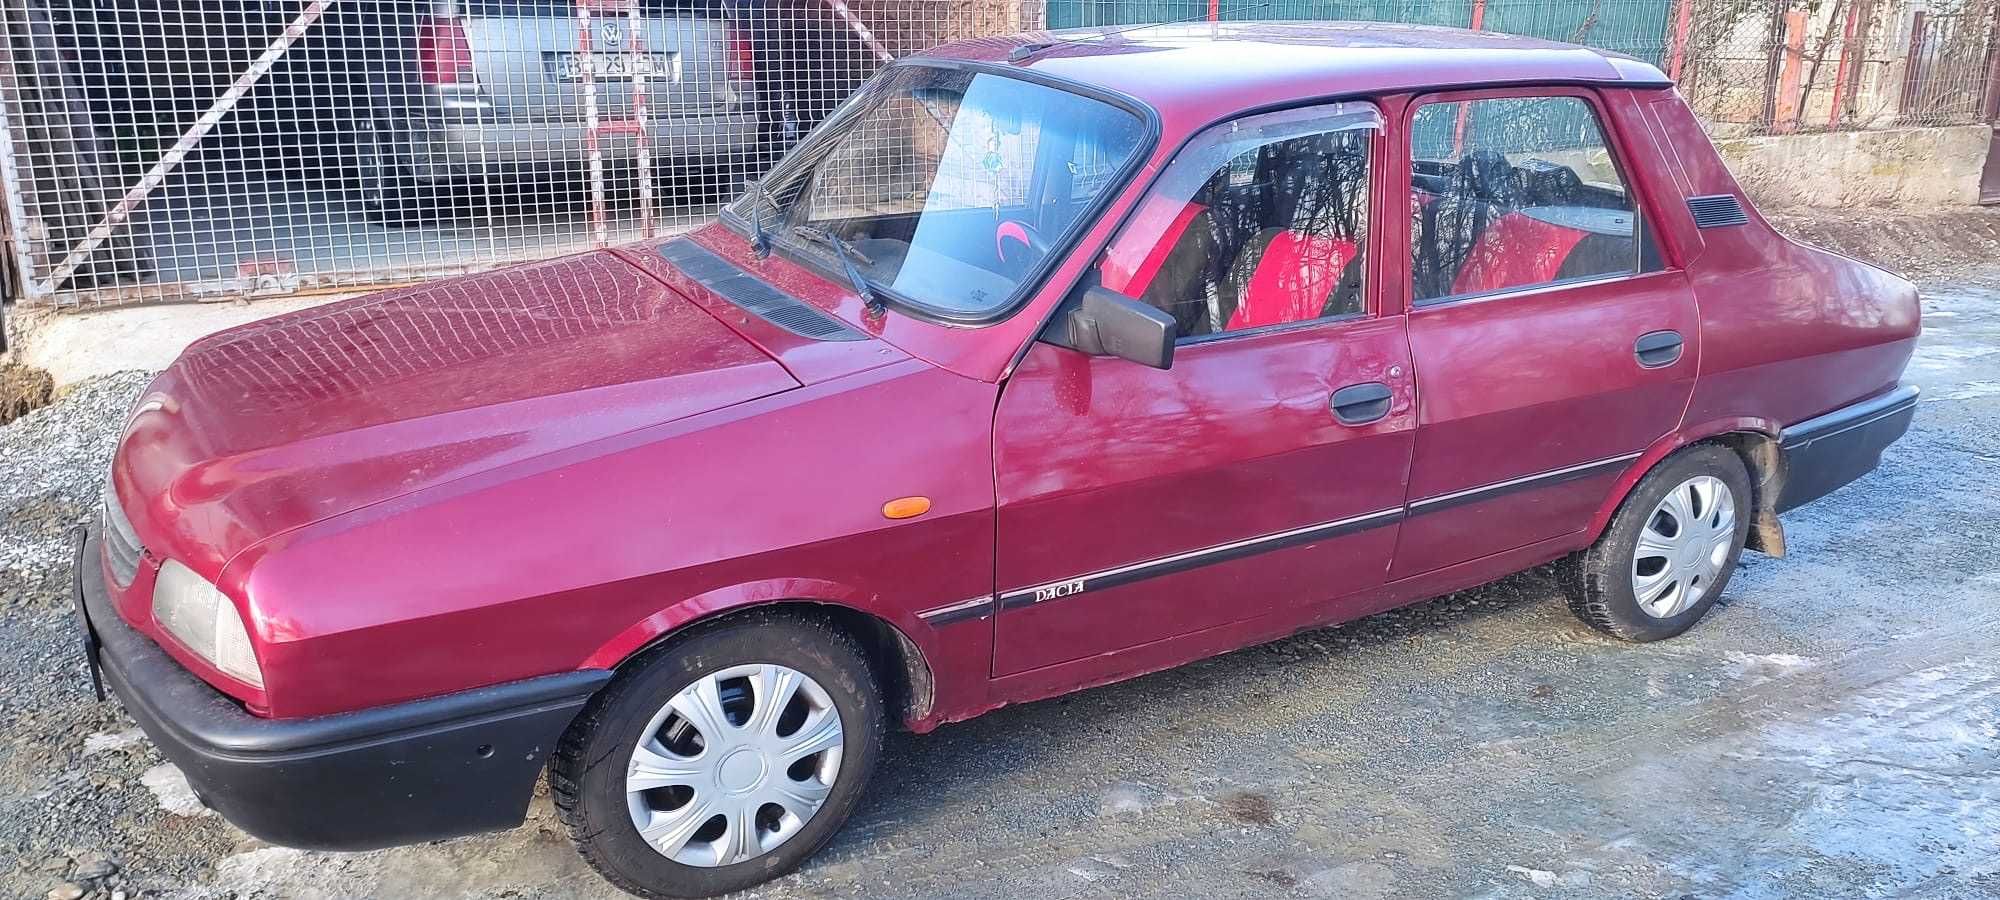 Dacia 1310 Benzina